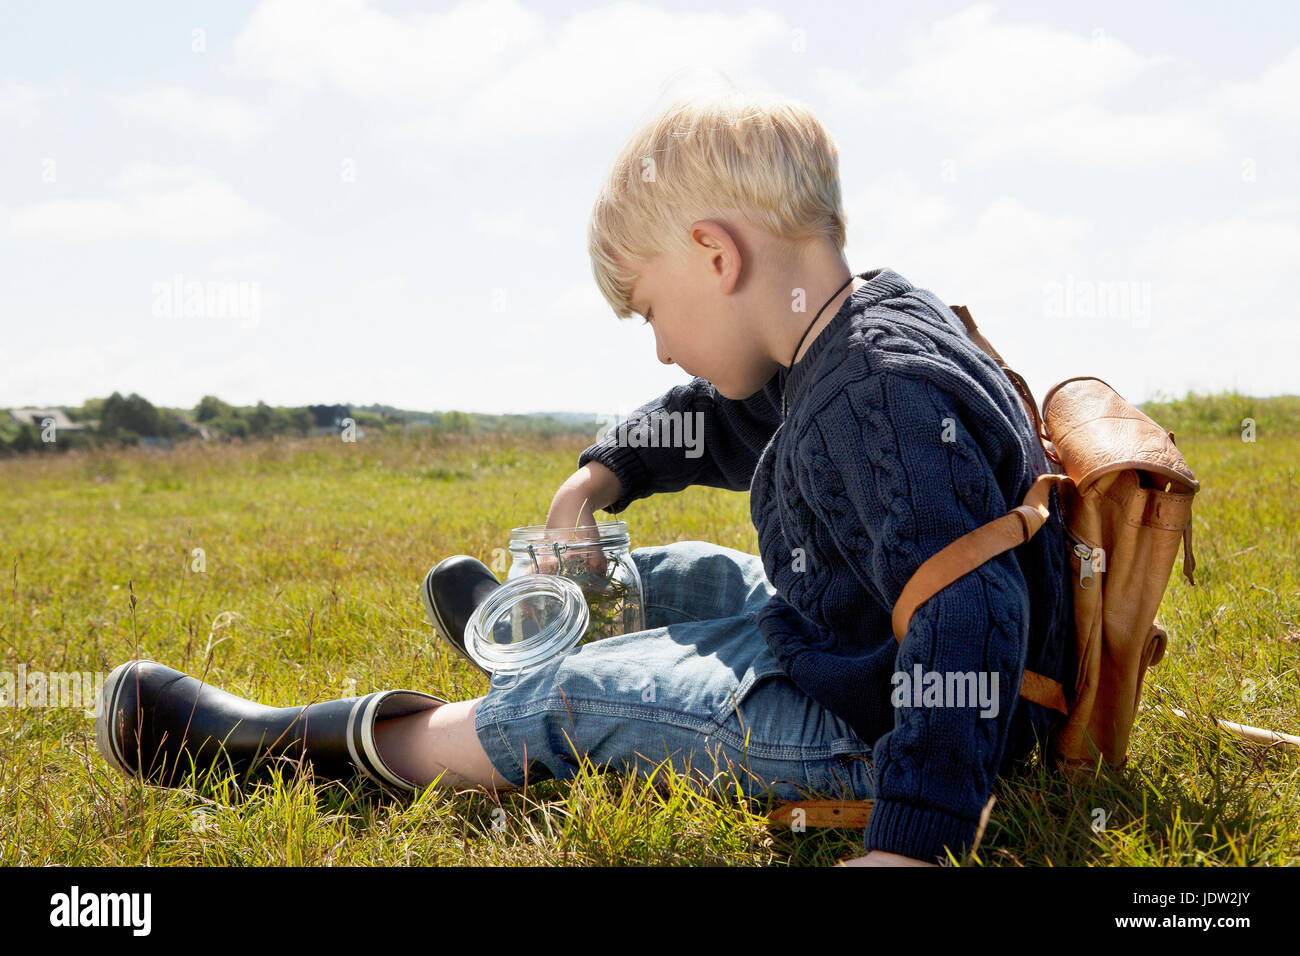 Boy filling jar in grassy field Stock Photo